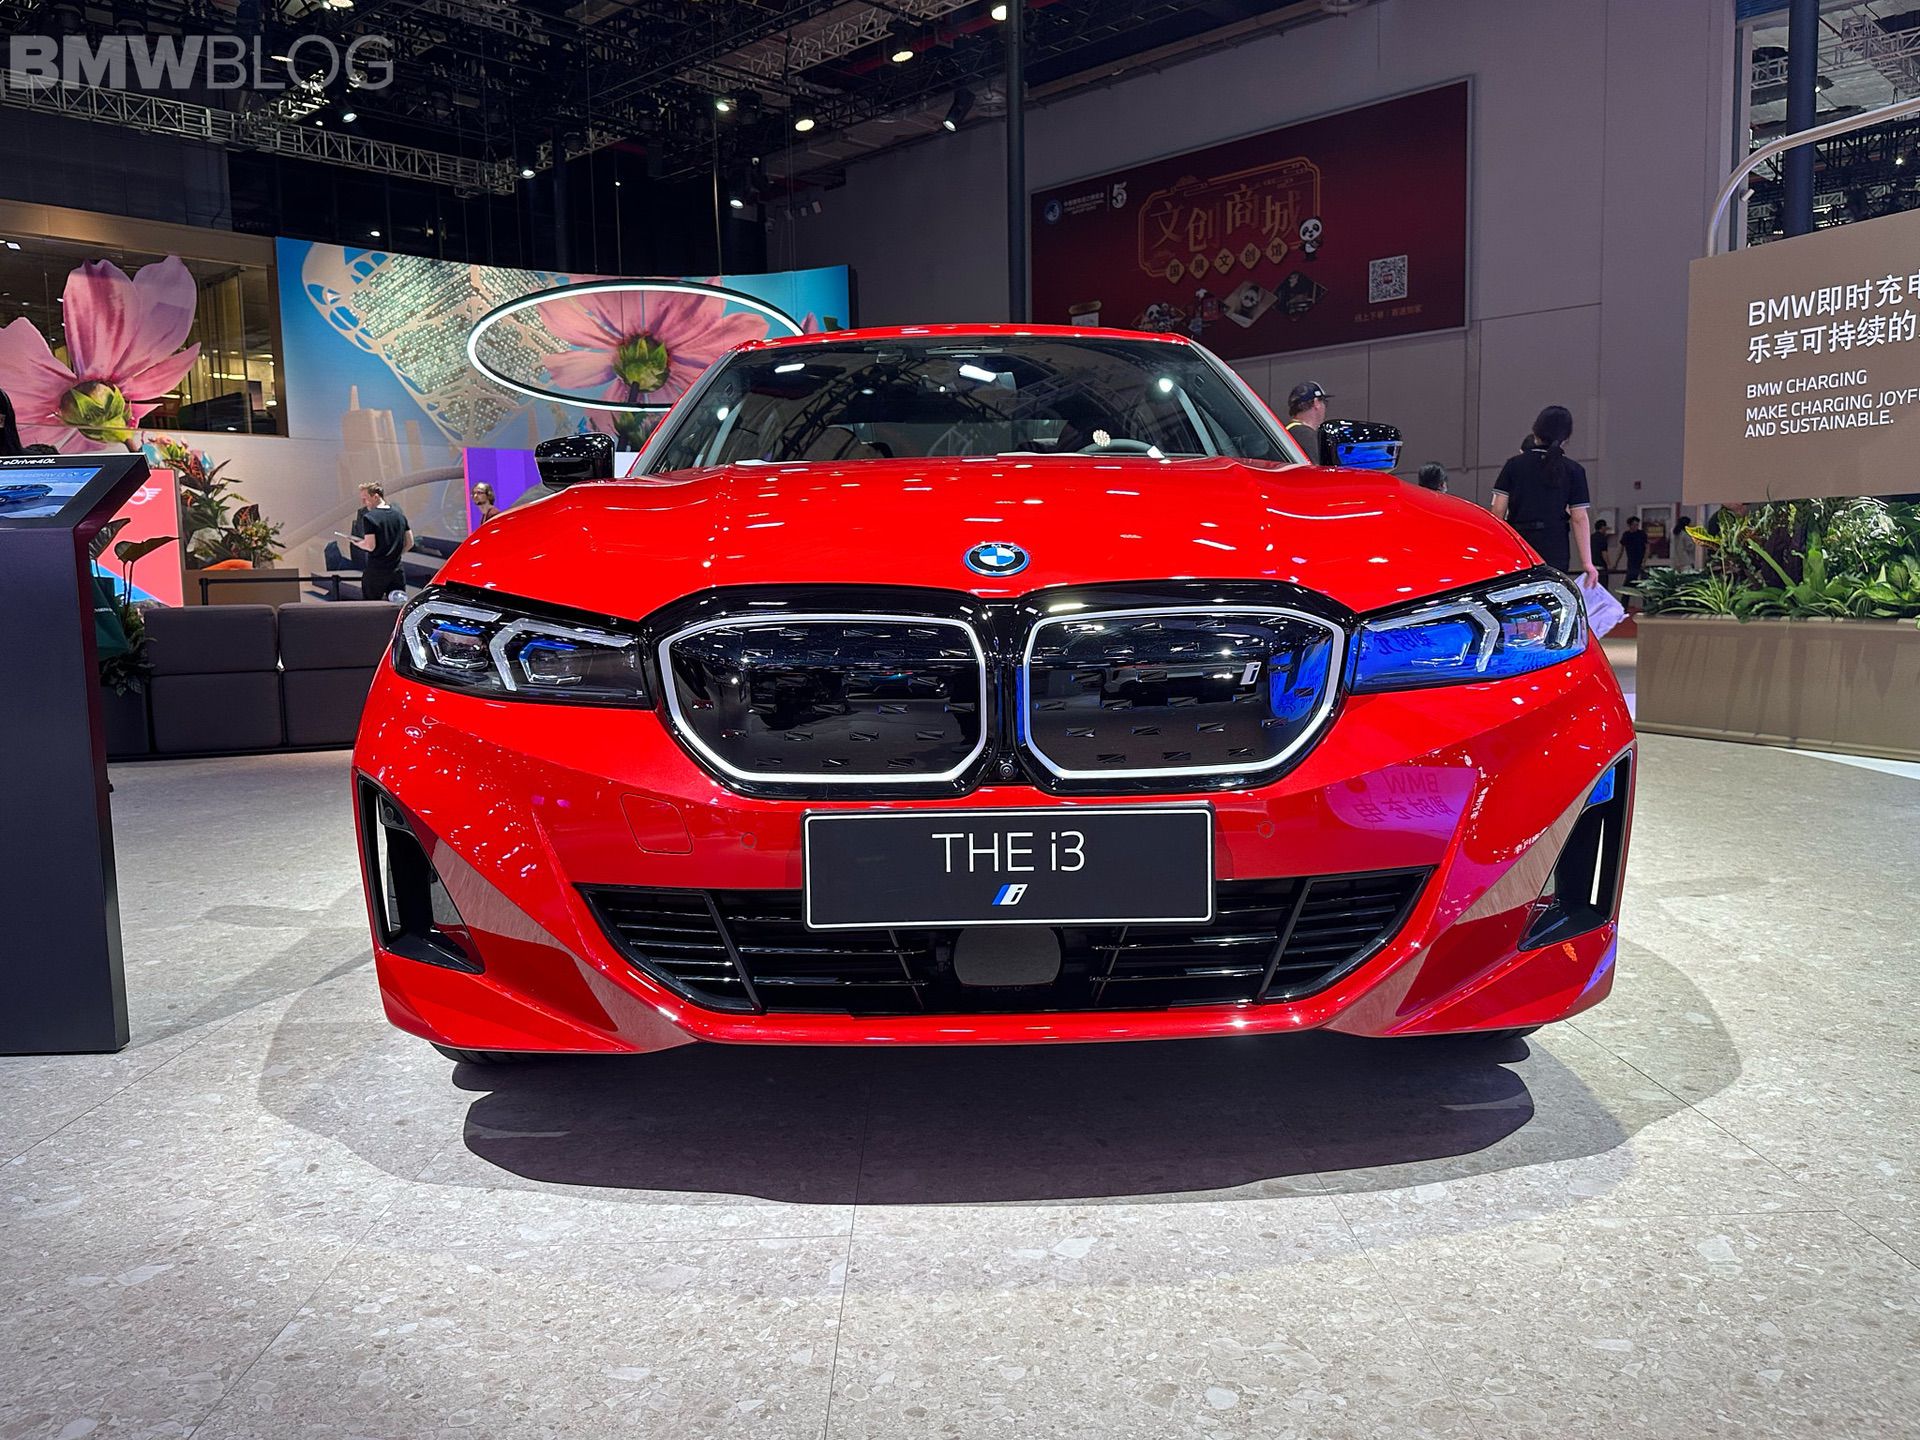 BMW подчеркивает взаимовыгодность сильных связей с Китаем на фоне общих стремлений к развитию электромобилей